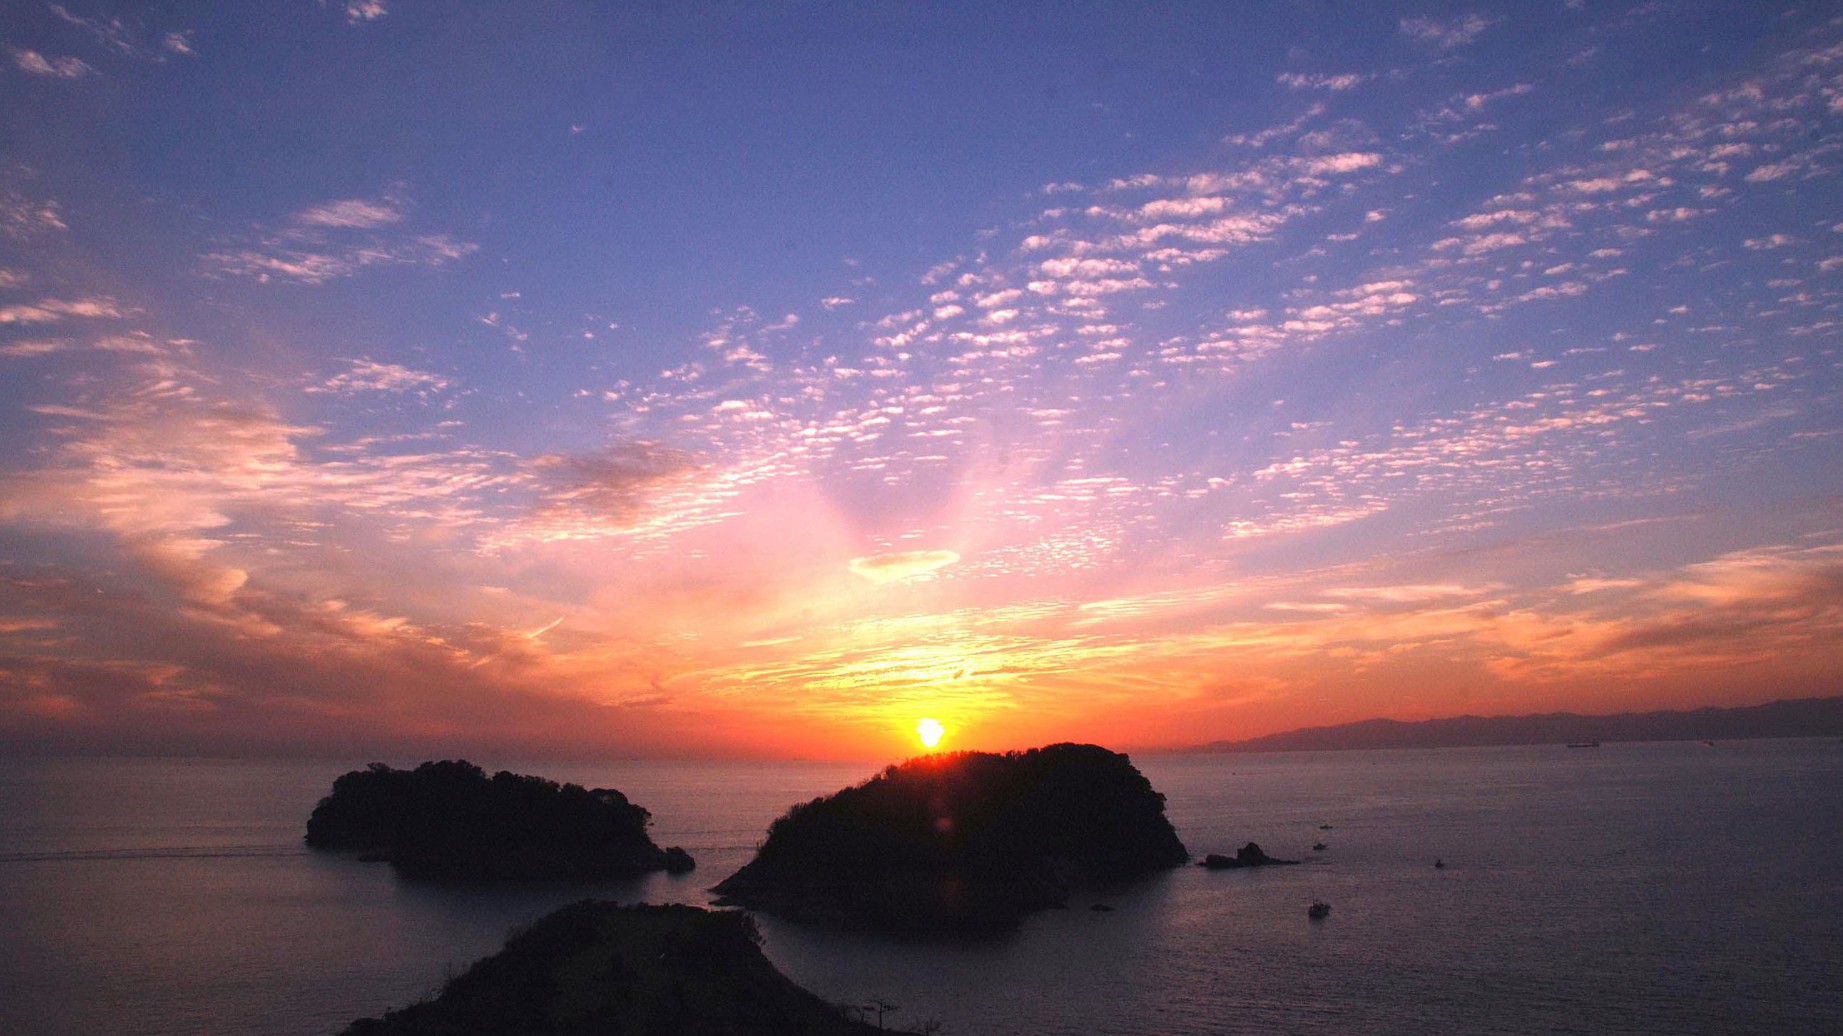 【景色】夕陽100選に選ばれた海に沈む美しい夕陽